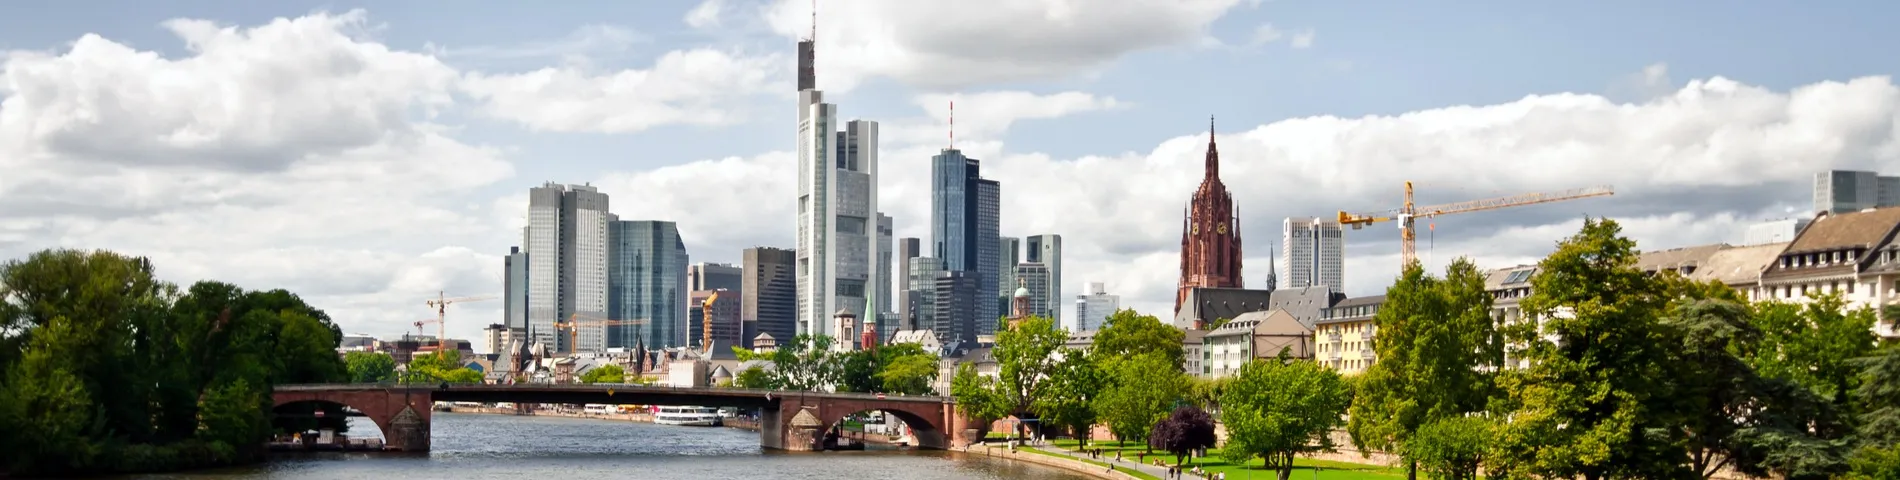 Frankfurt - General*